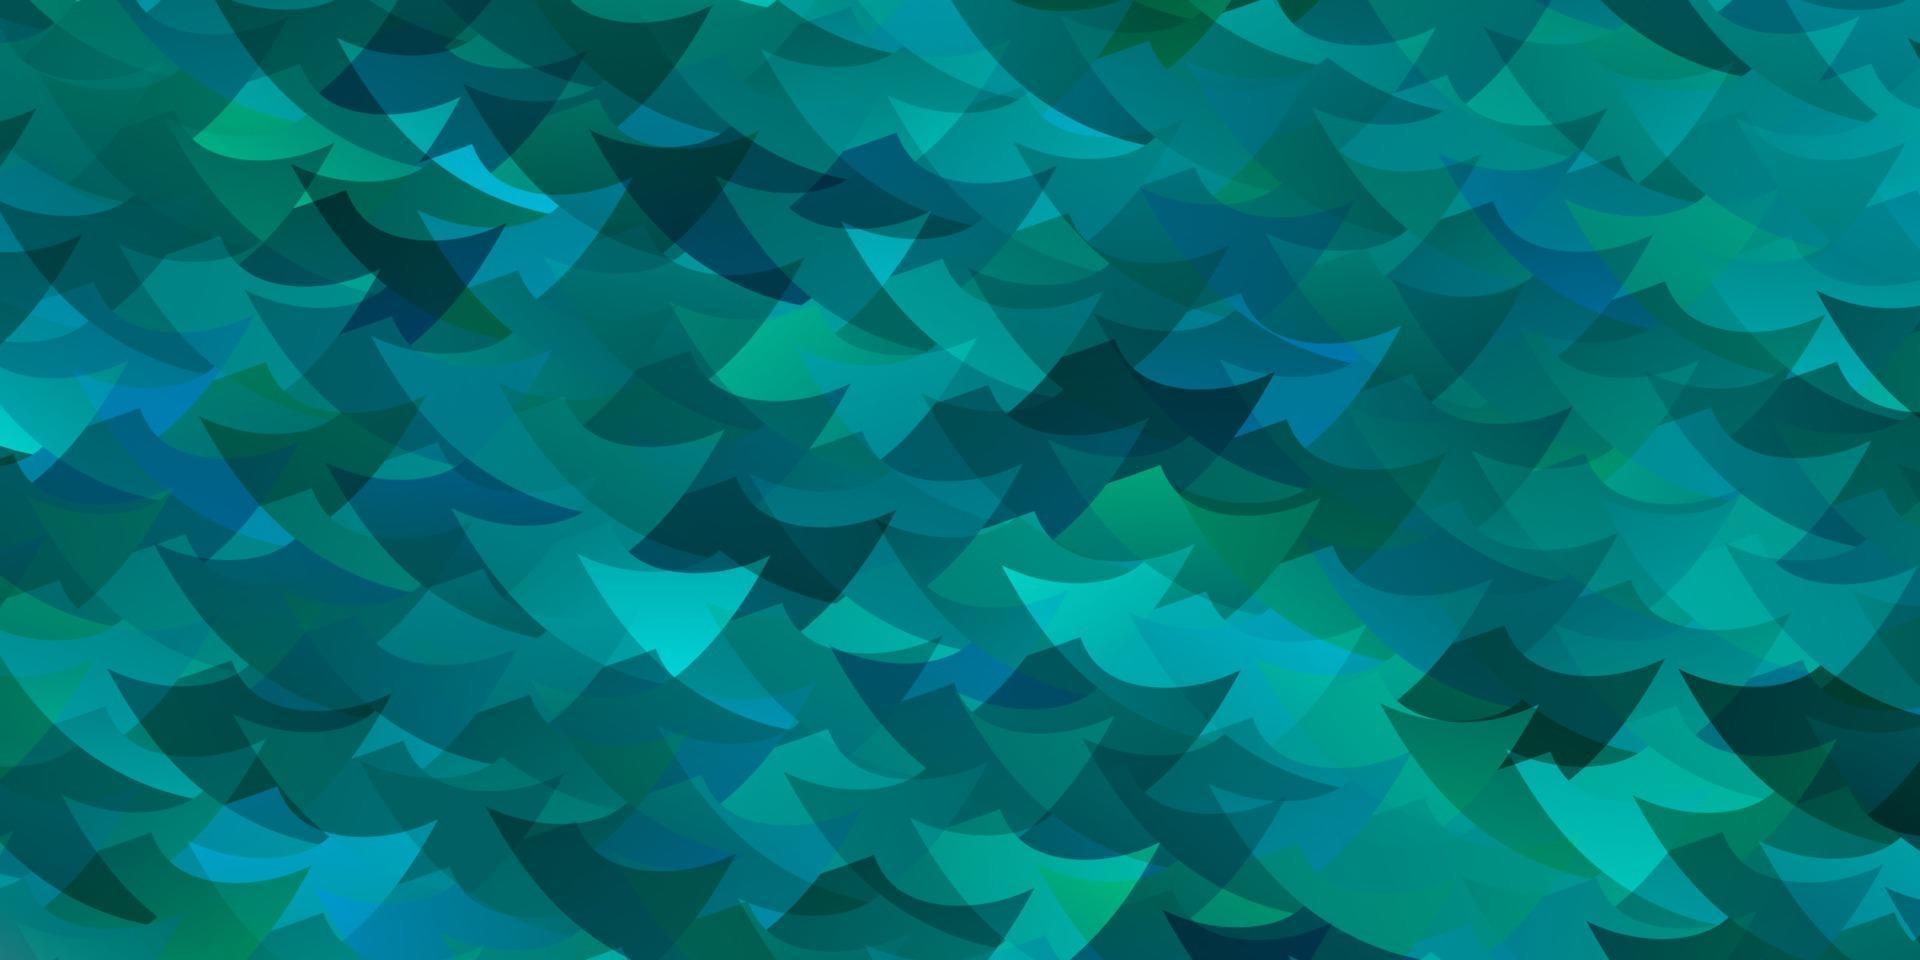 fond de vecteur bleu clair, vert avec des triangles, des cubes.